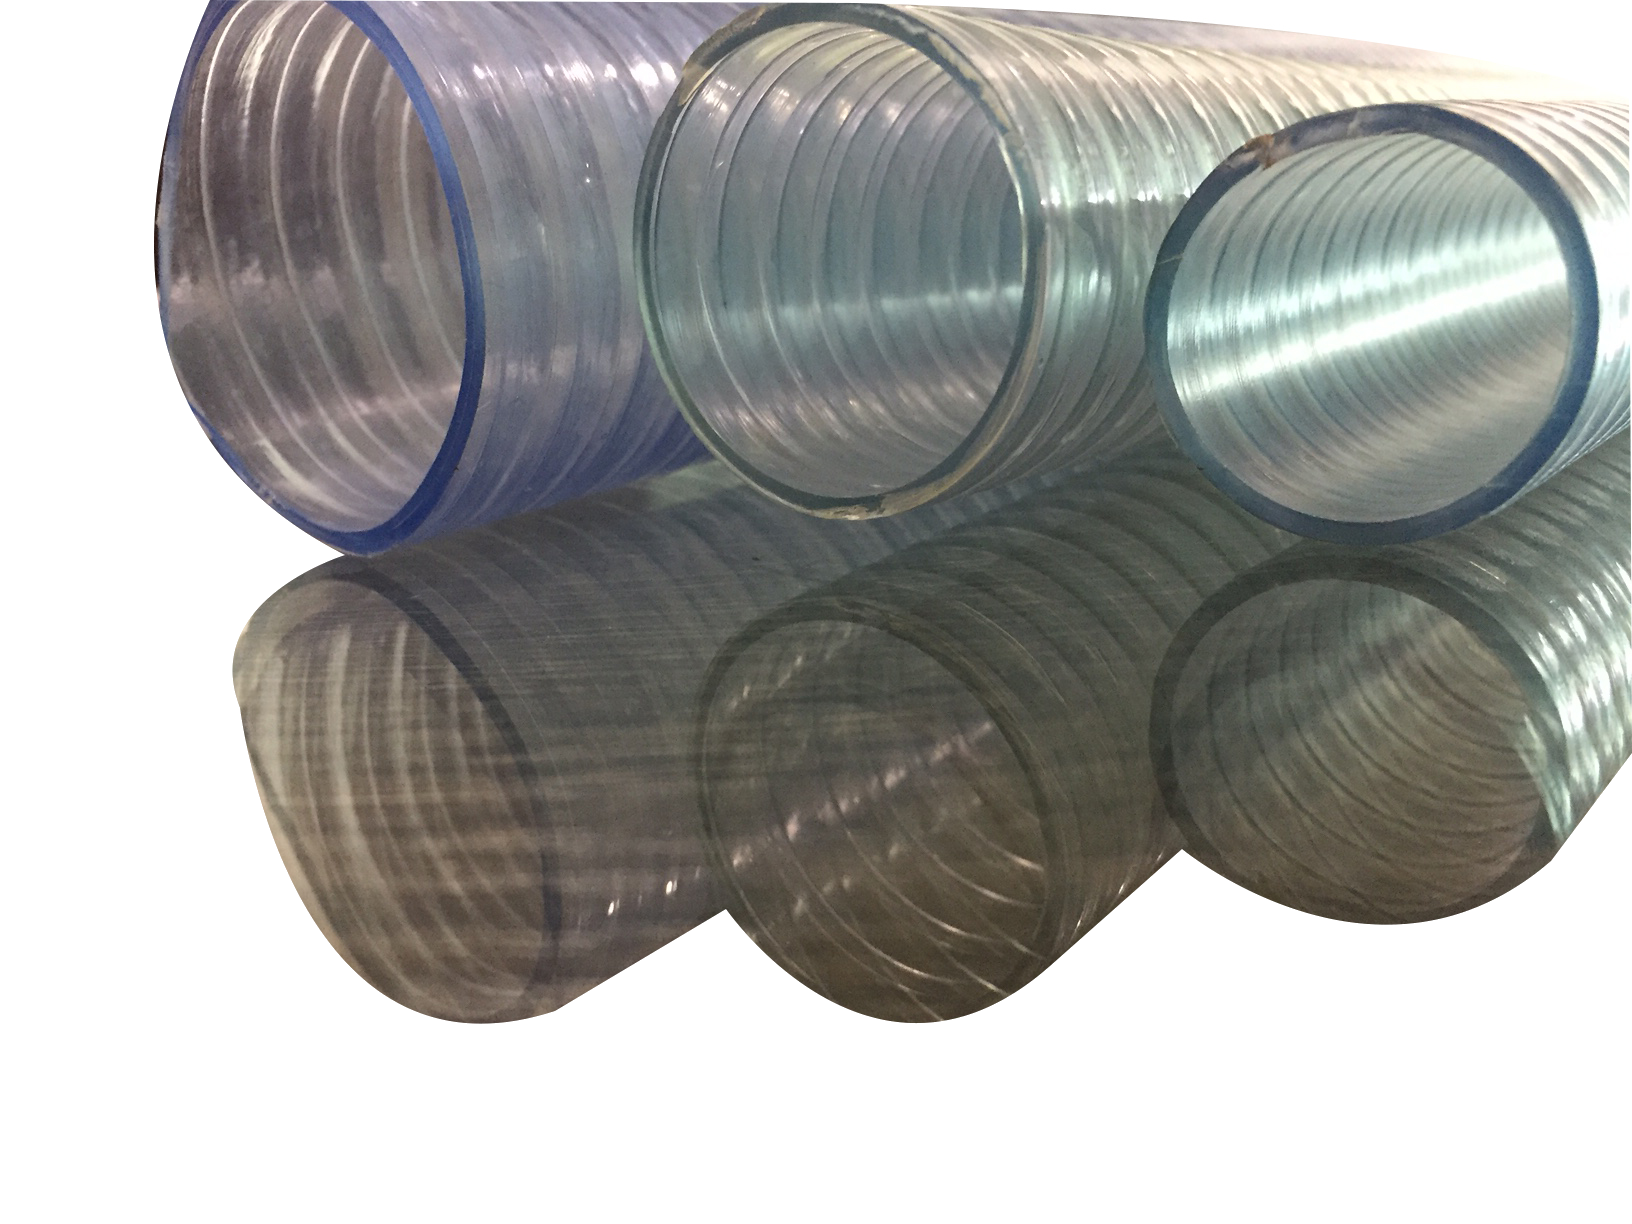 PVC transparent hose1